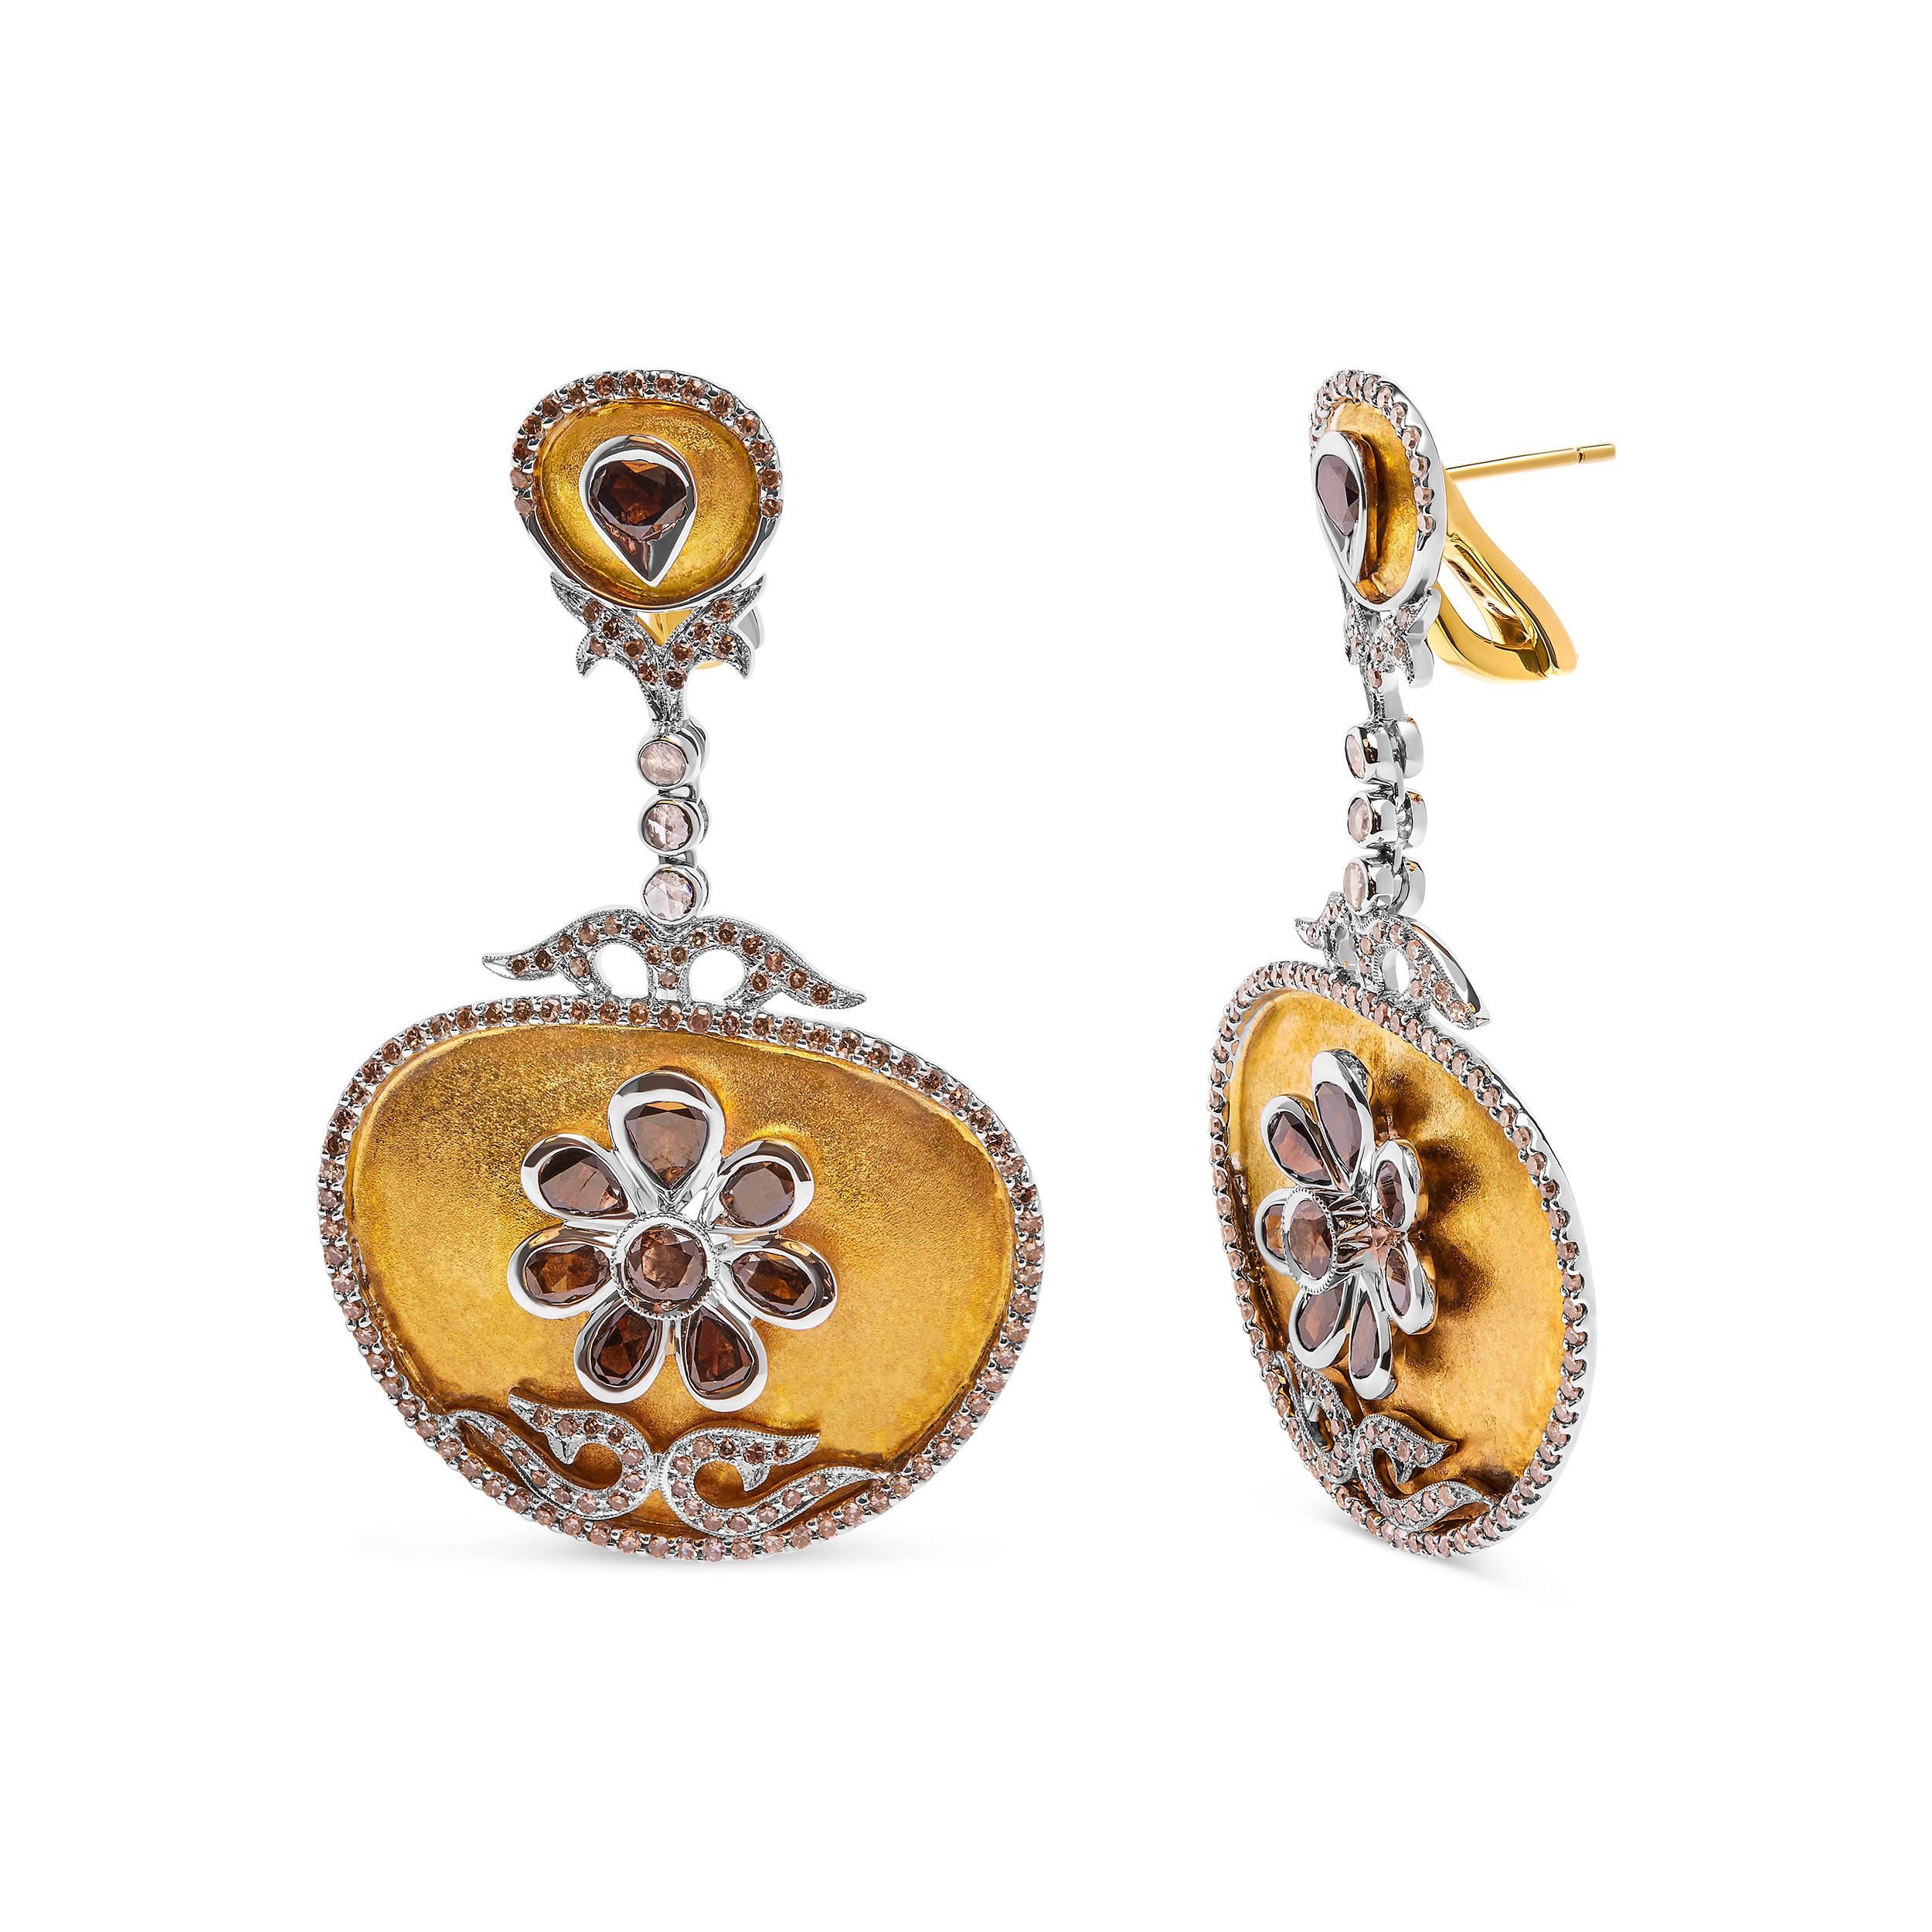 Wir präsentieren unsere exquisiten Medaillon-Ohrringe aus 14 Karat Weiß- und Gelbgold, ein wahres Meisterwerk, das Sie in seinen Bann ziehen wird. Mit bemerkenswerten 5 1/4 Cttw Diamanten im Rosenschliff strahlen diese Ohrringe Eleganz und